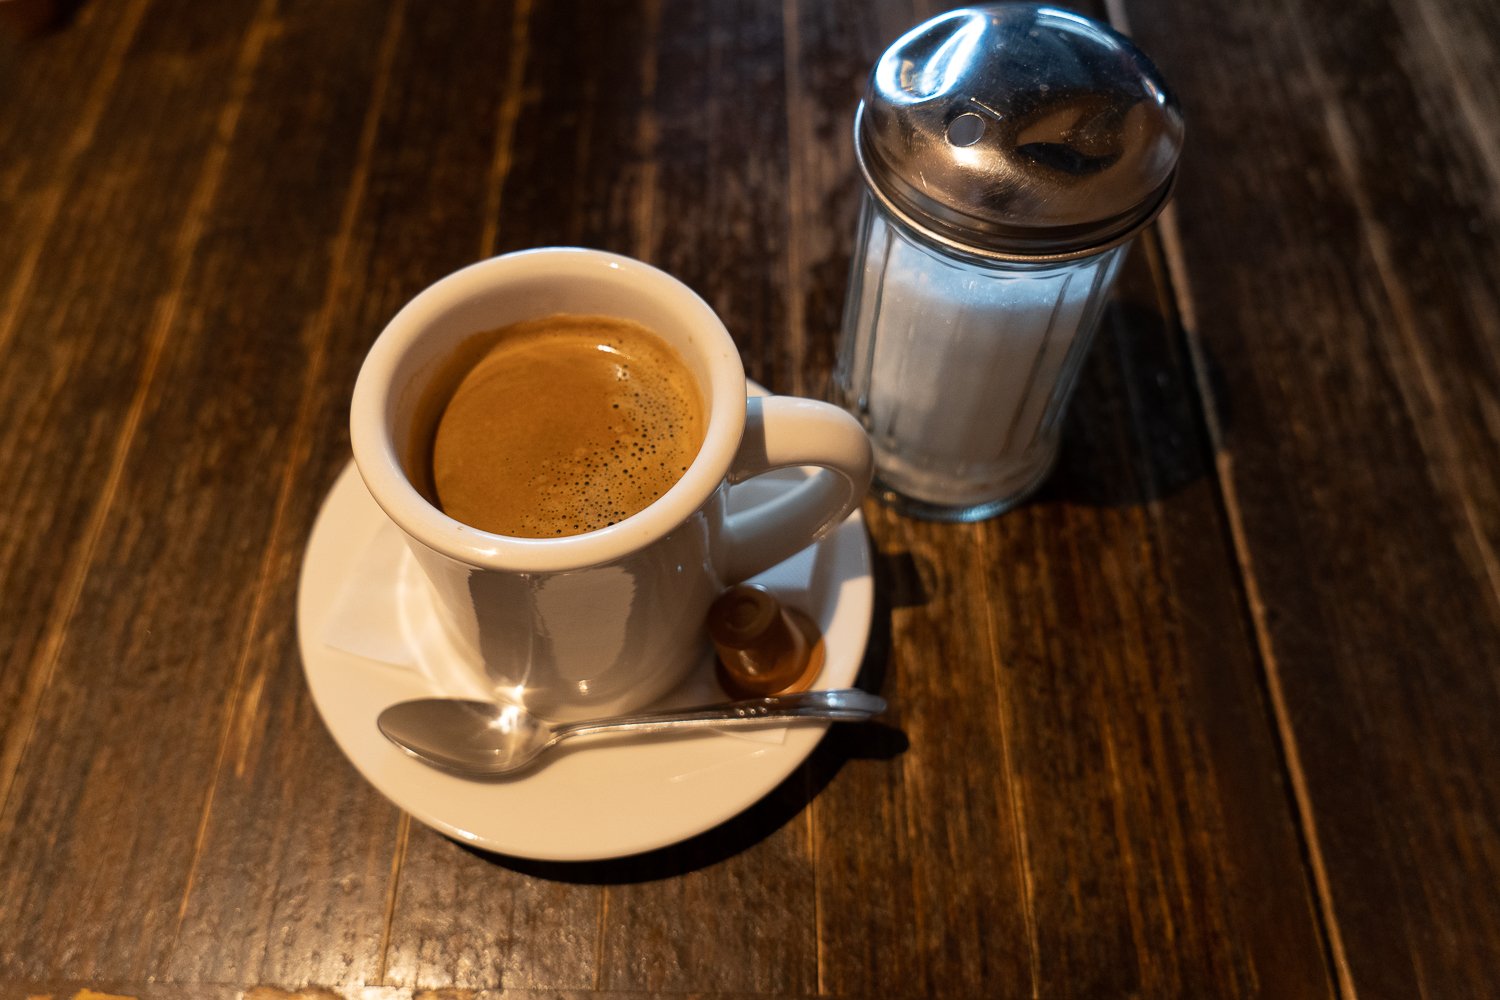 ぽってりしたマグカップで提供されるコーヒーは450円。砂糖入れもアメリカンな雰囲気。